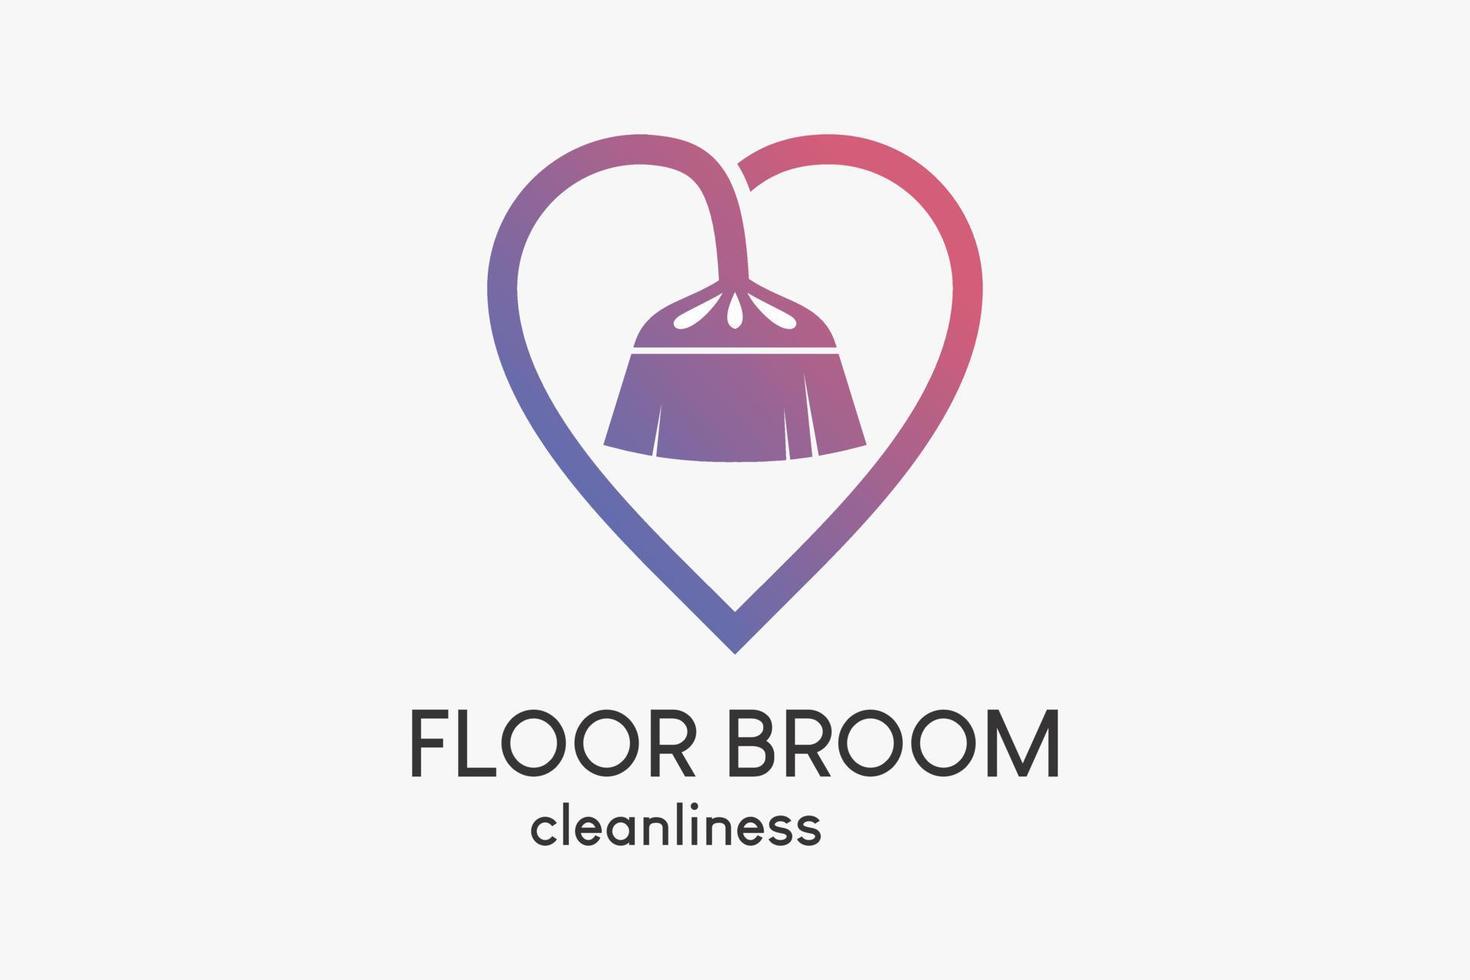 logotipo de varredura de chão ou serviço de limpeza de casa com conceito criativo, silhueta de vassoura de chão combinada com coração vetor